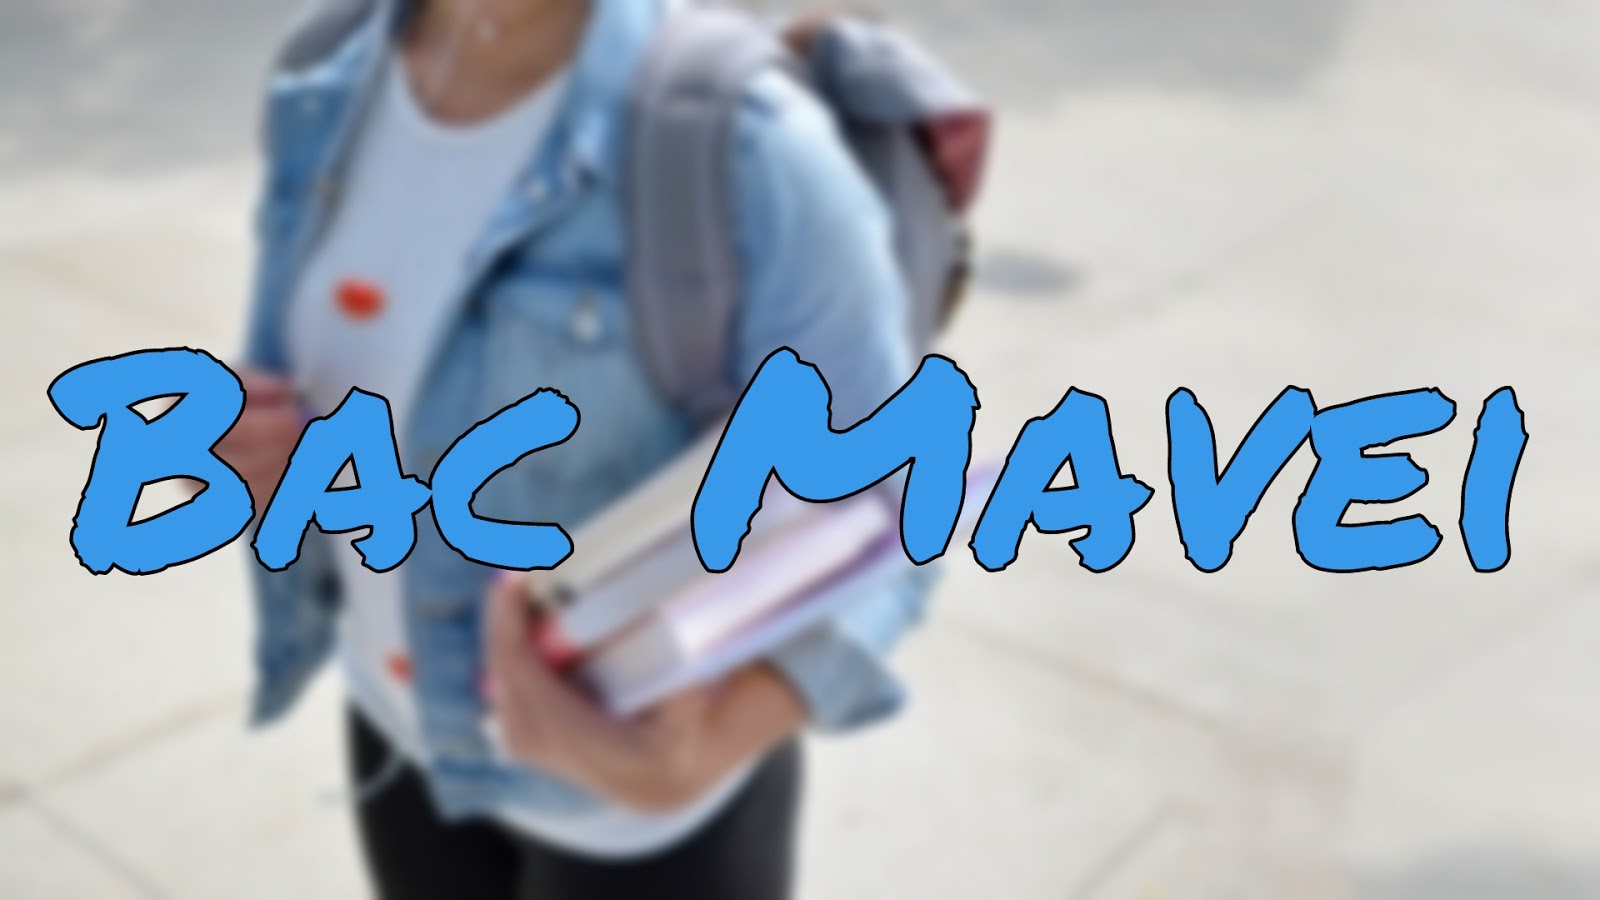 تنزيل تطبيق Bac mavie apk للأندرويد مجانا آخر إصدار